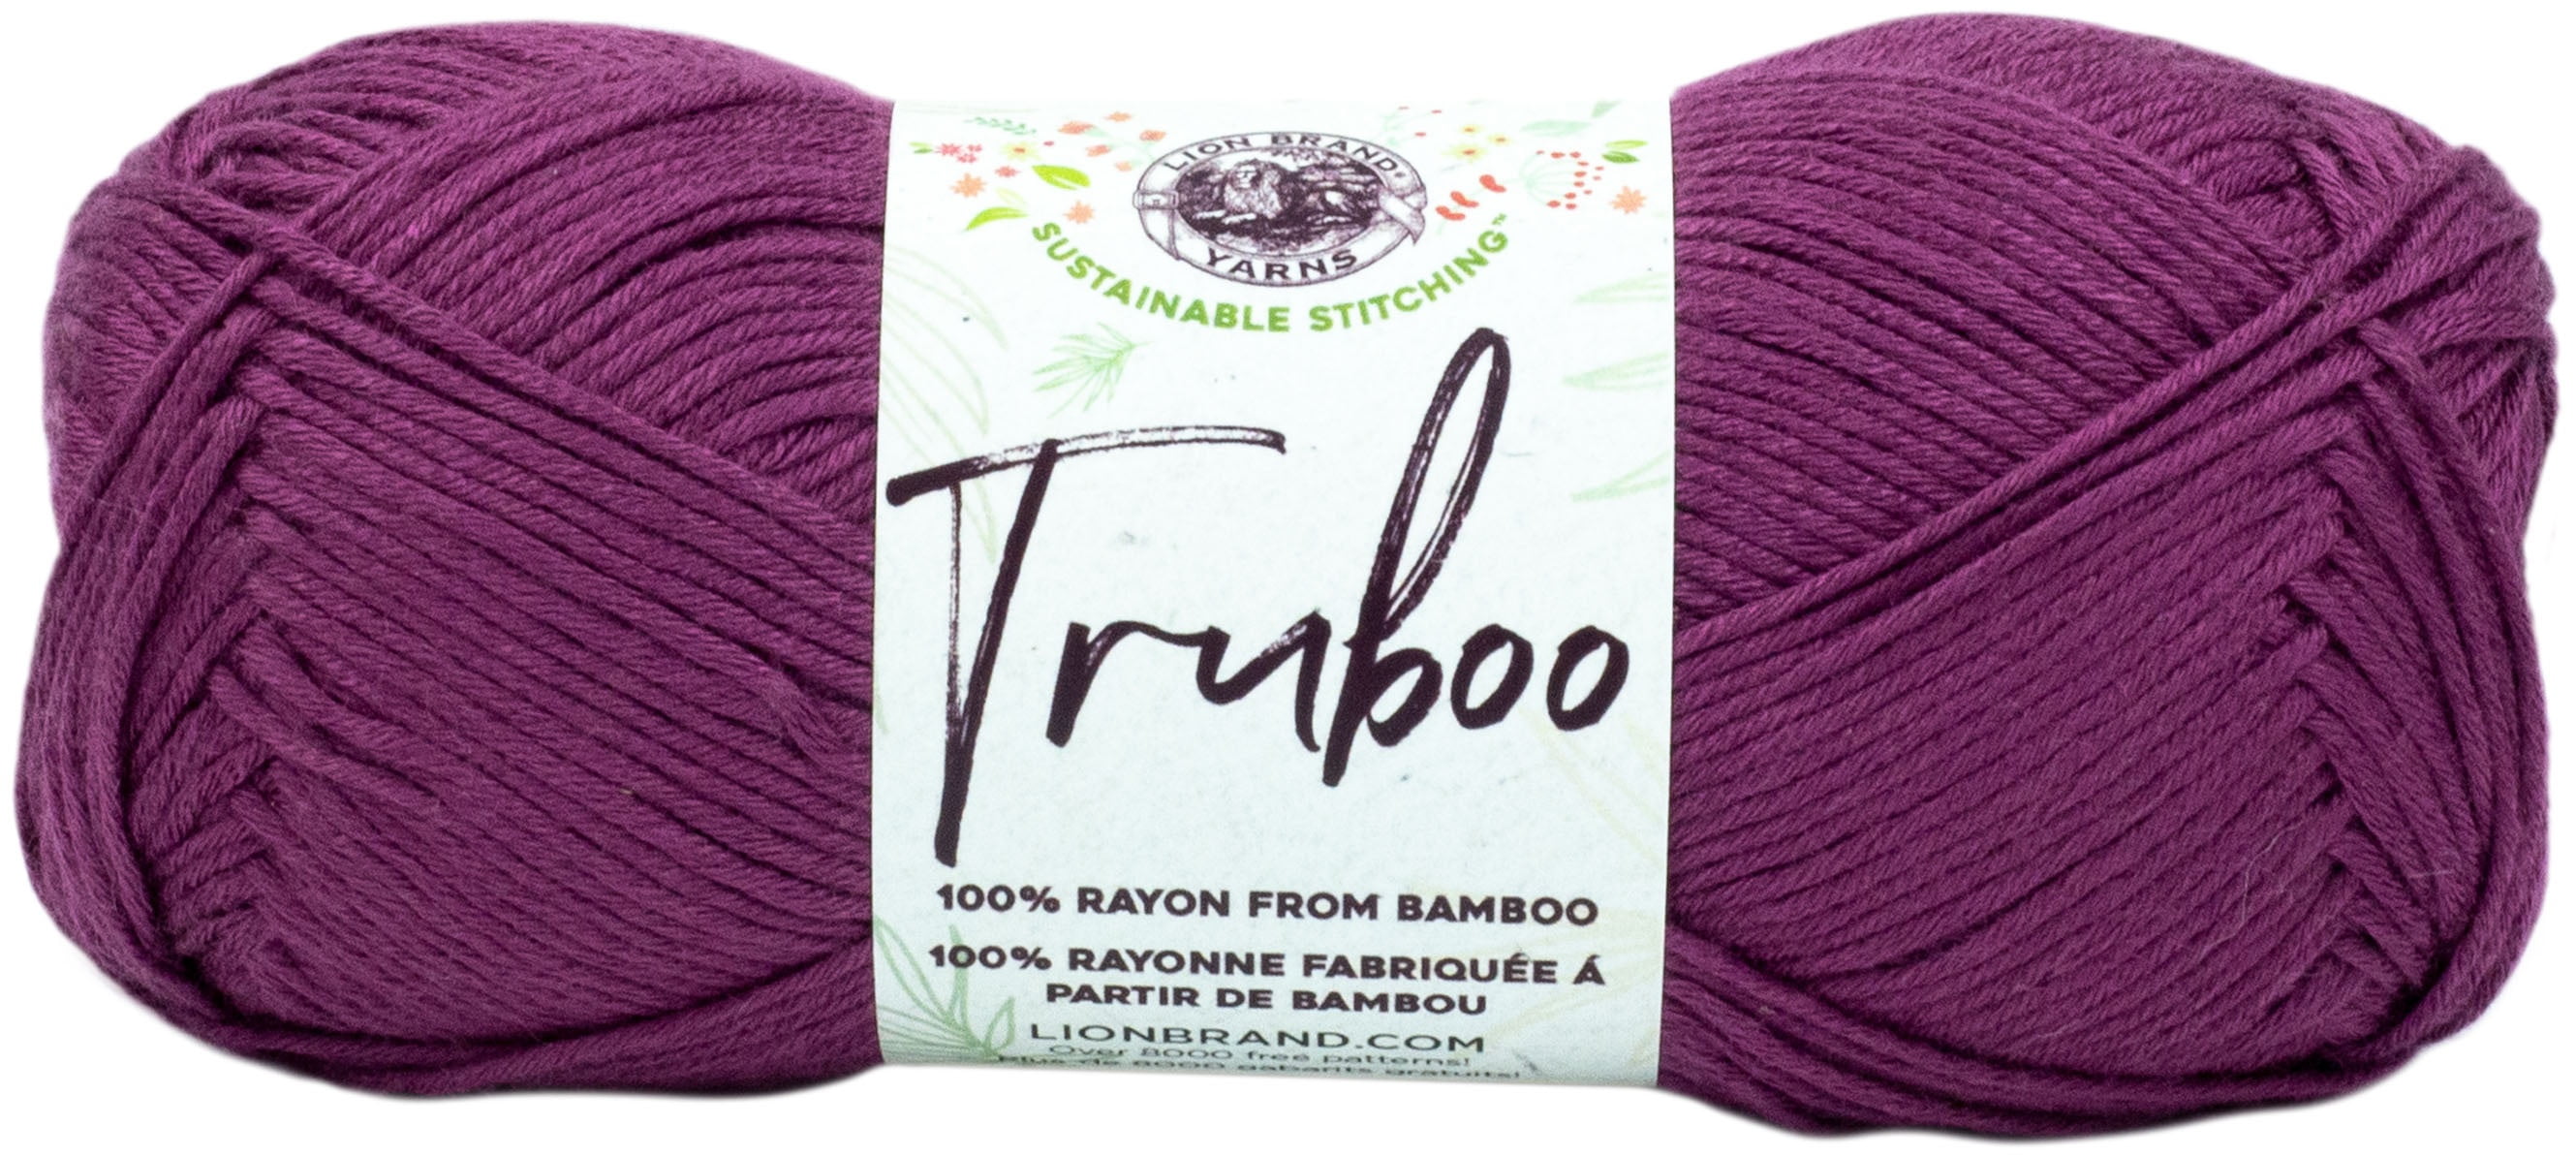 3-pack Truboo Yarn 